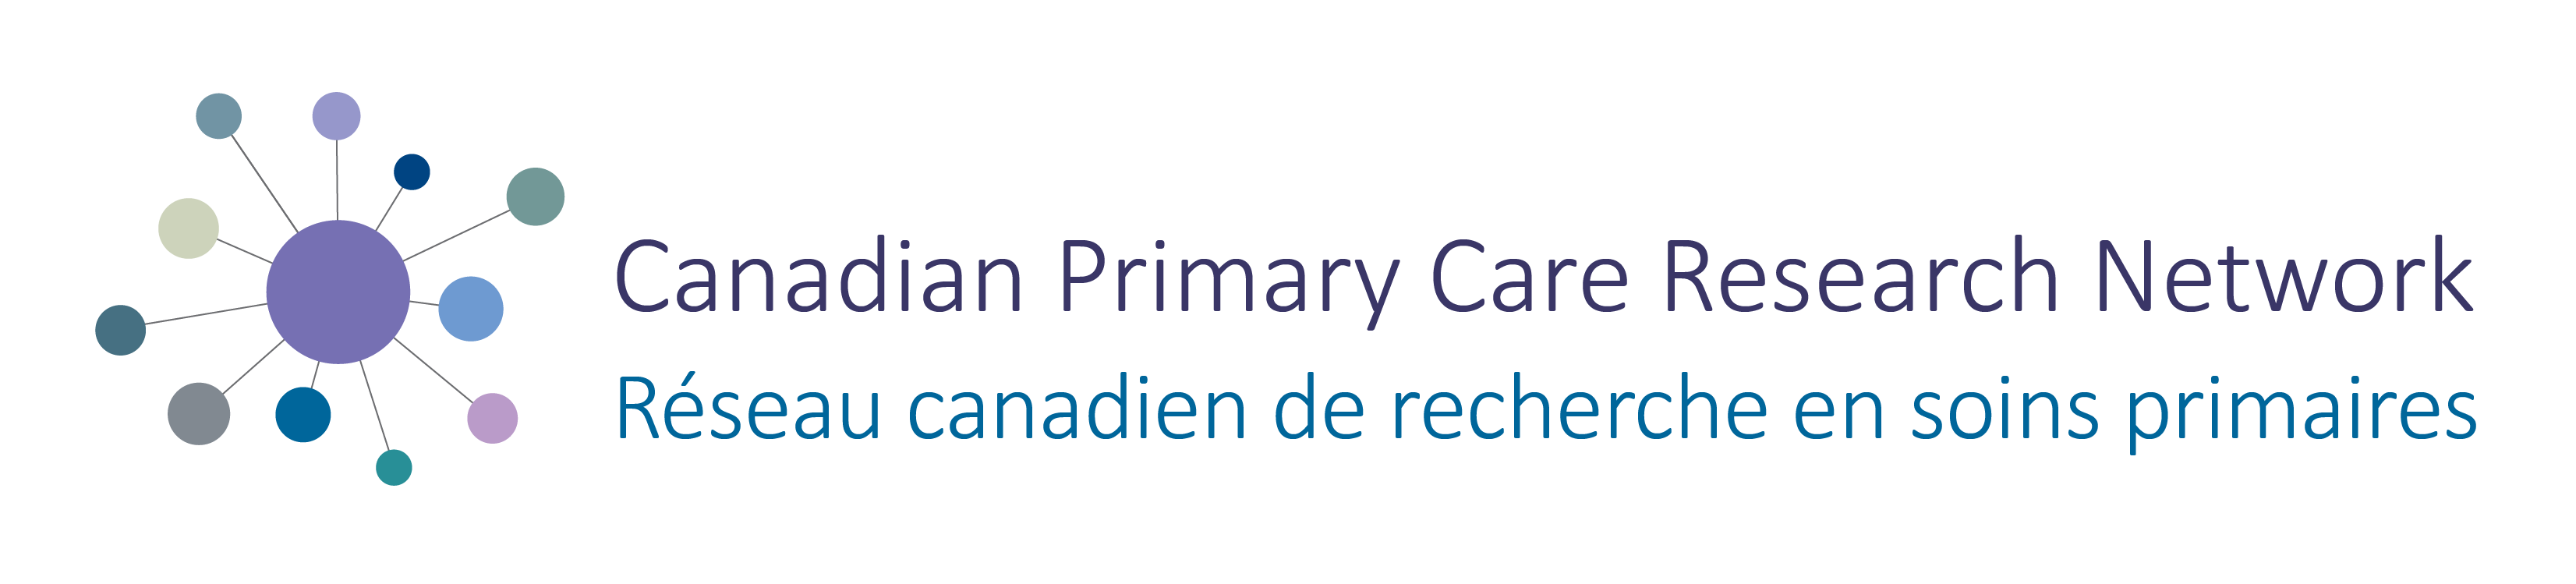 CPCRN logo